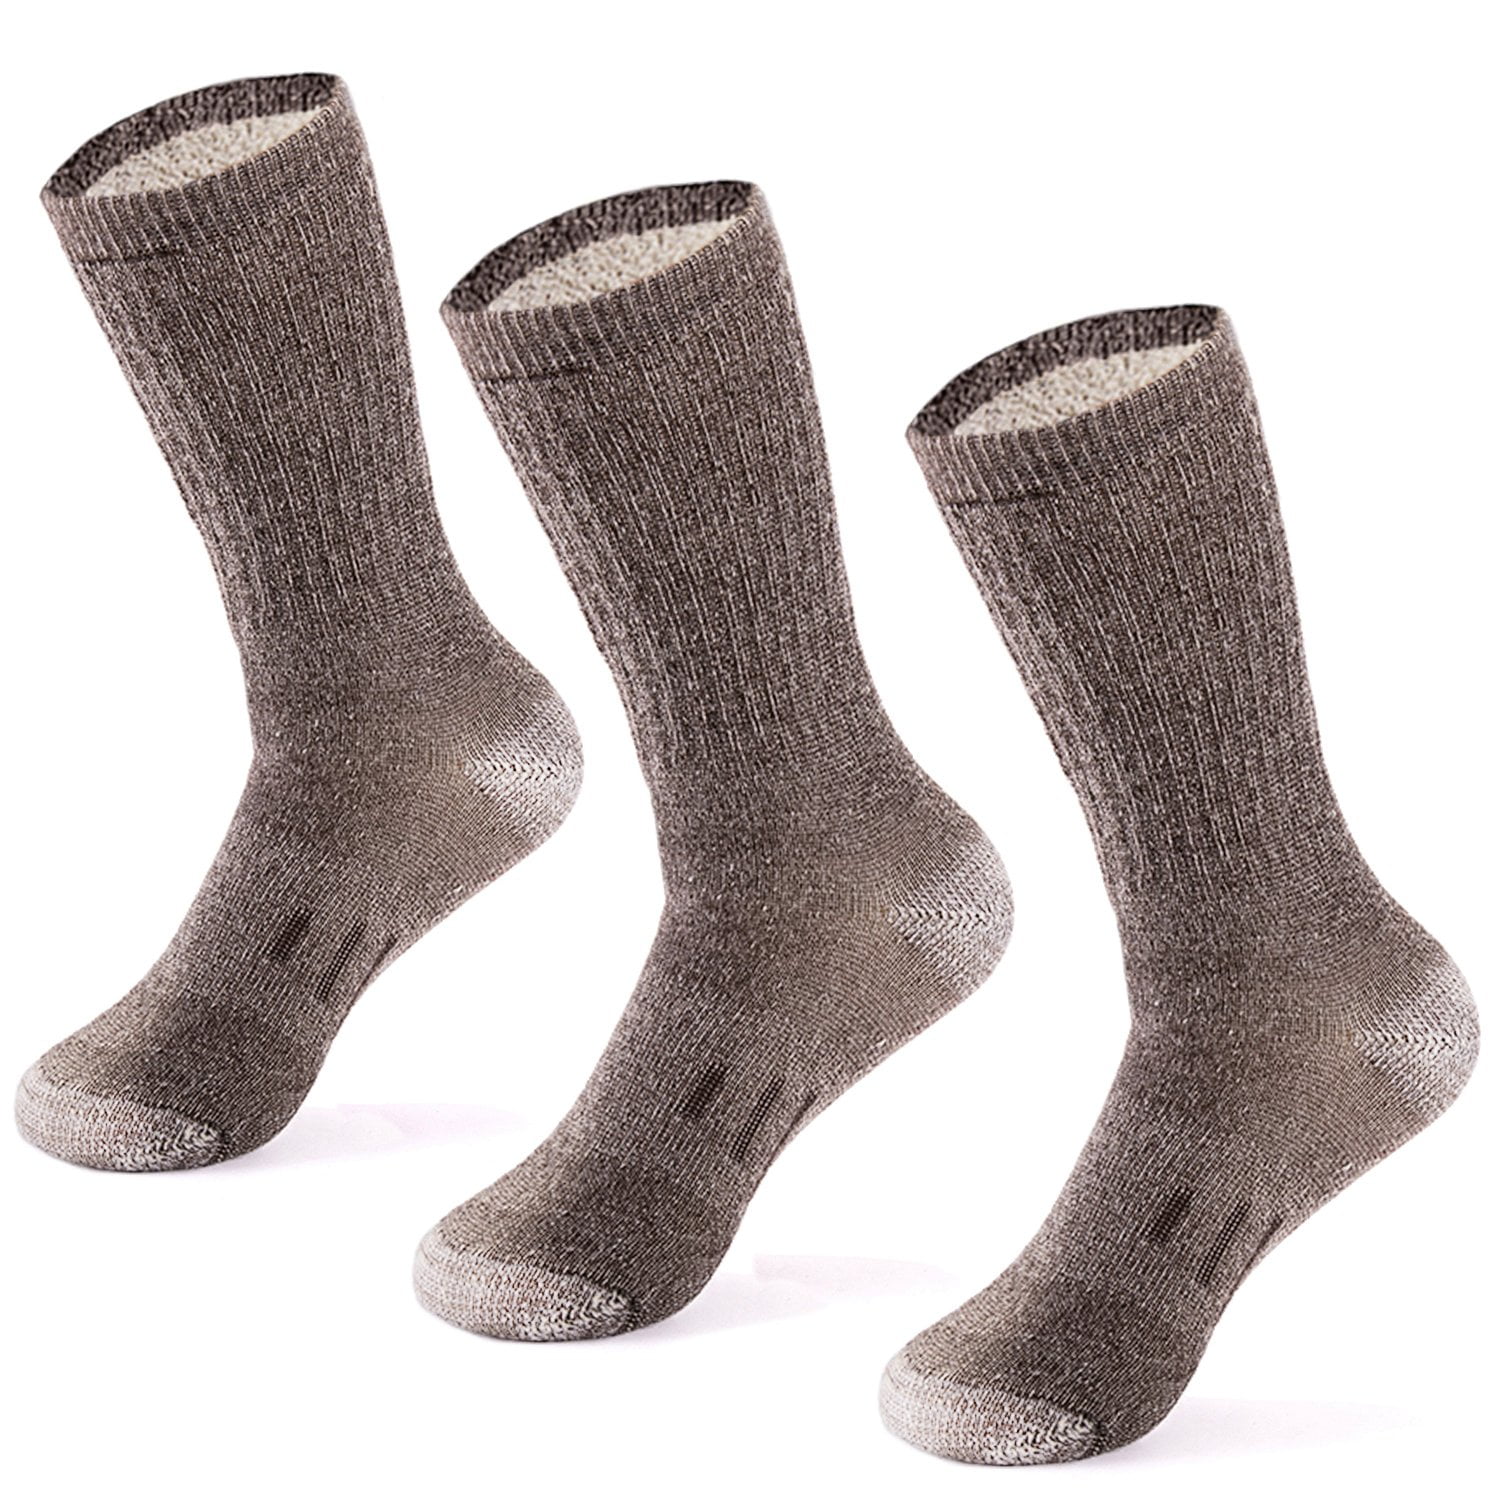 MERIWOOL 3 Pairs Merino Wool Blend Socks - Choose Your Size 